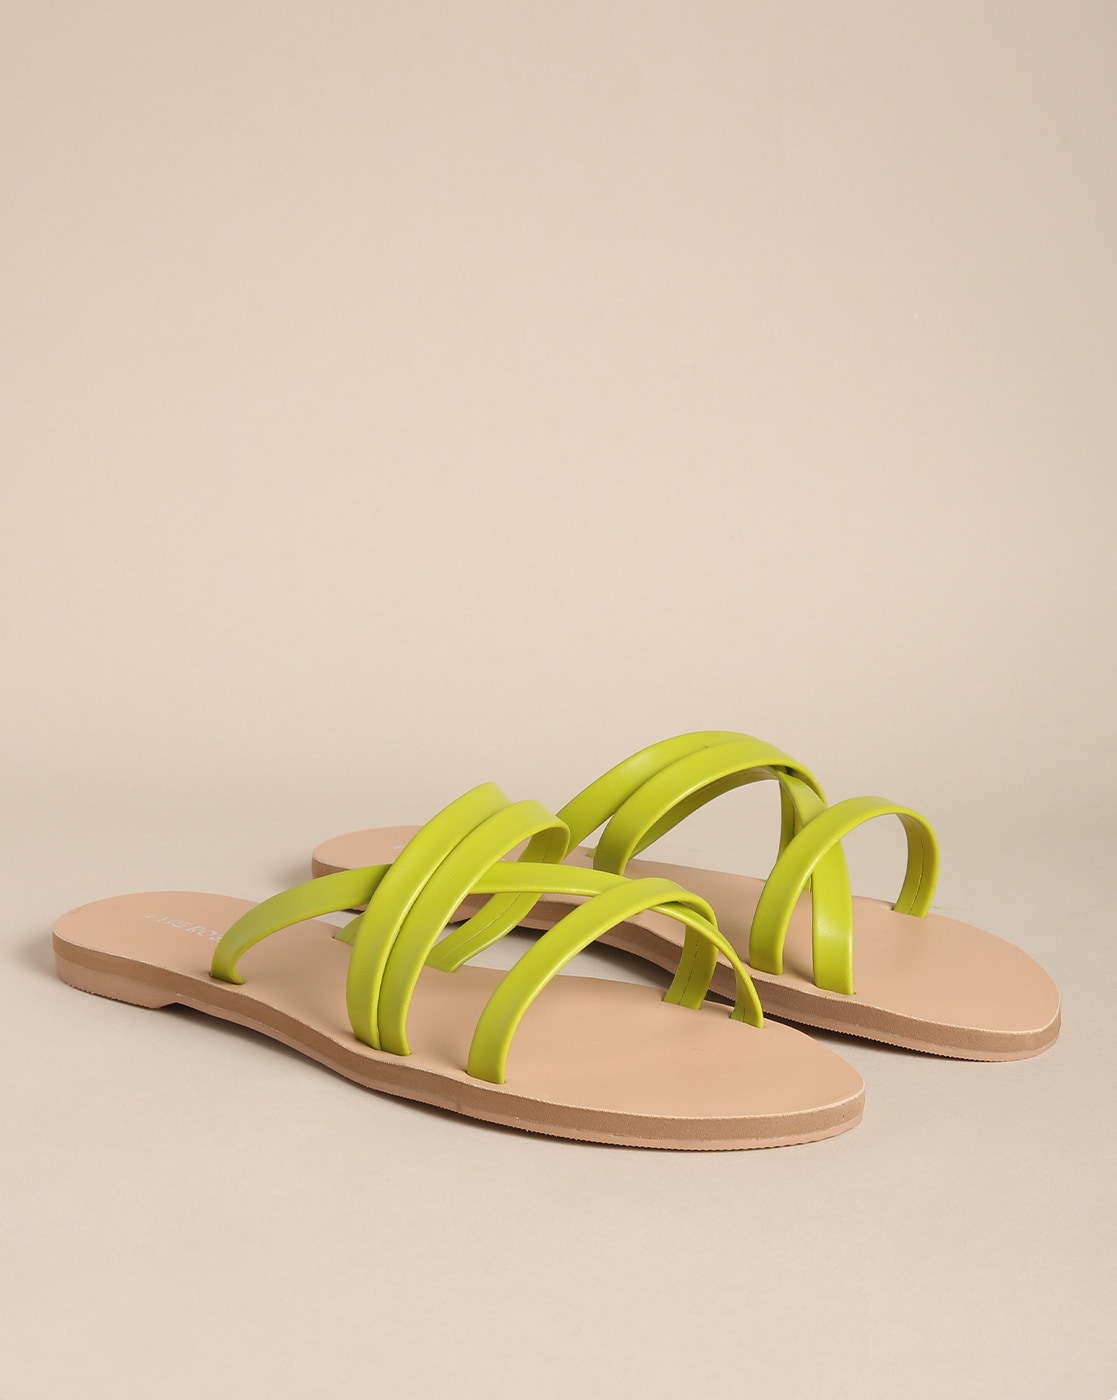 Share 76+ neon green flat sandals